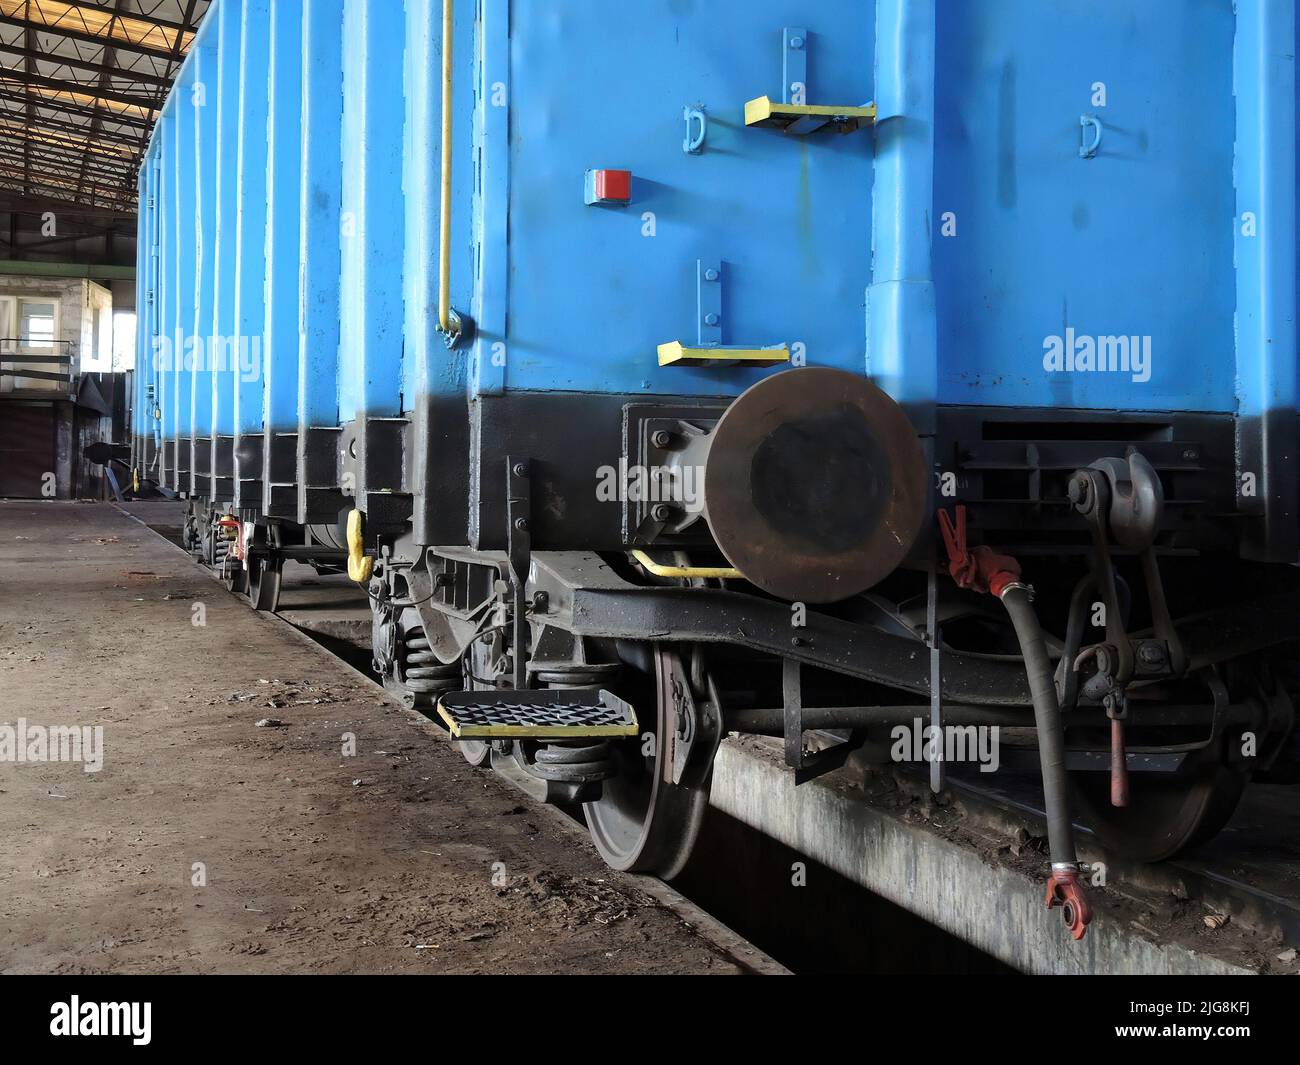 Blauer Wagen in einer alten Werkstatt von Waggons und Lokomotiven. Ort der Reparatur und Renovierung für Züge. Stockfoto